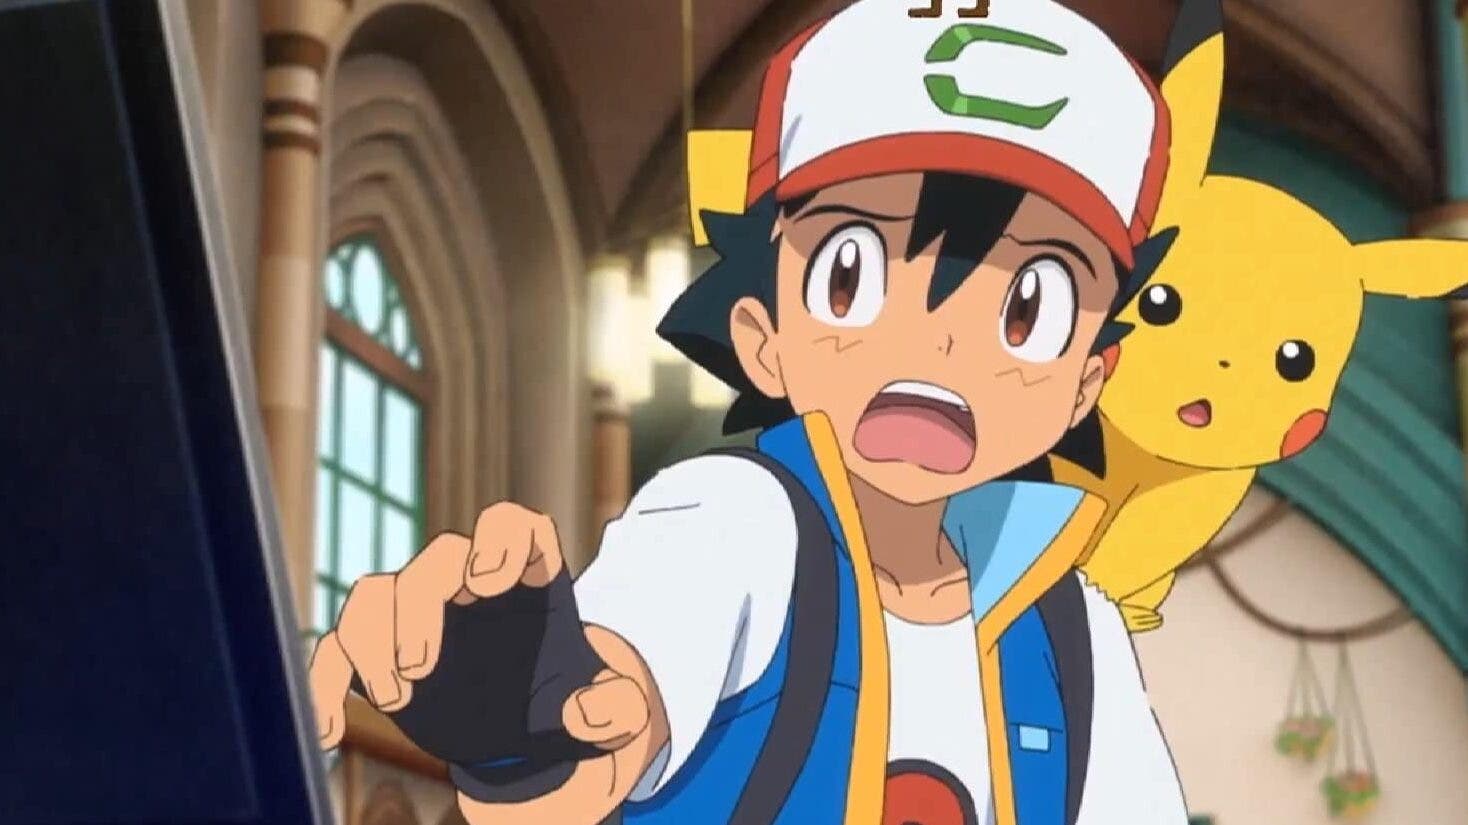 Ya puedes ver el anticipo del nuevo tráiler de la película Pokémon Coco